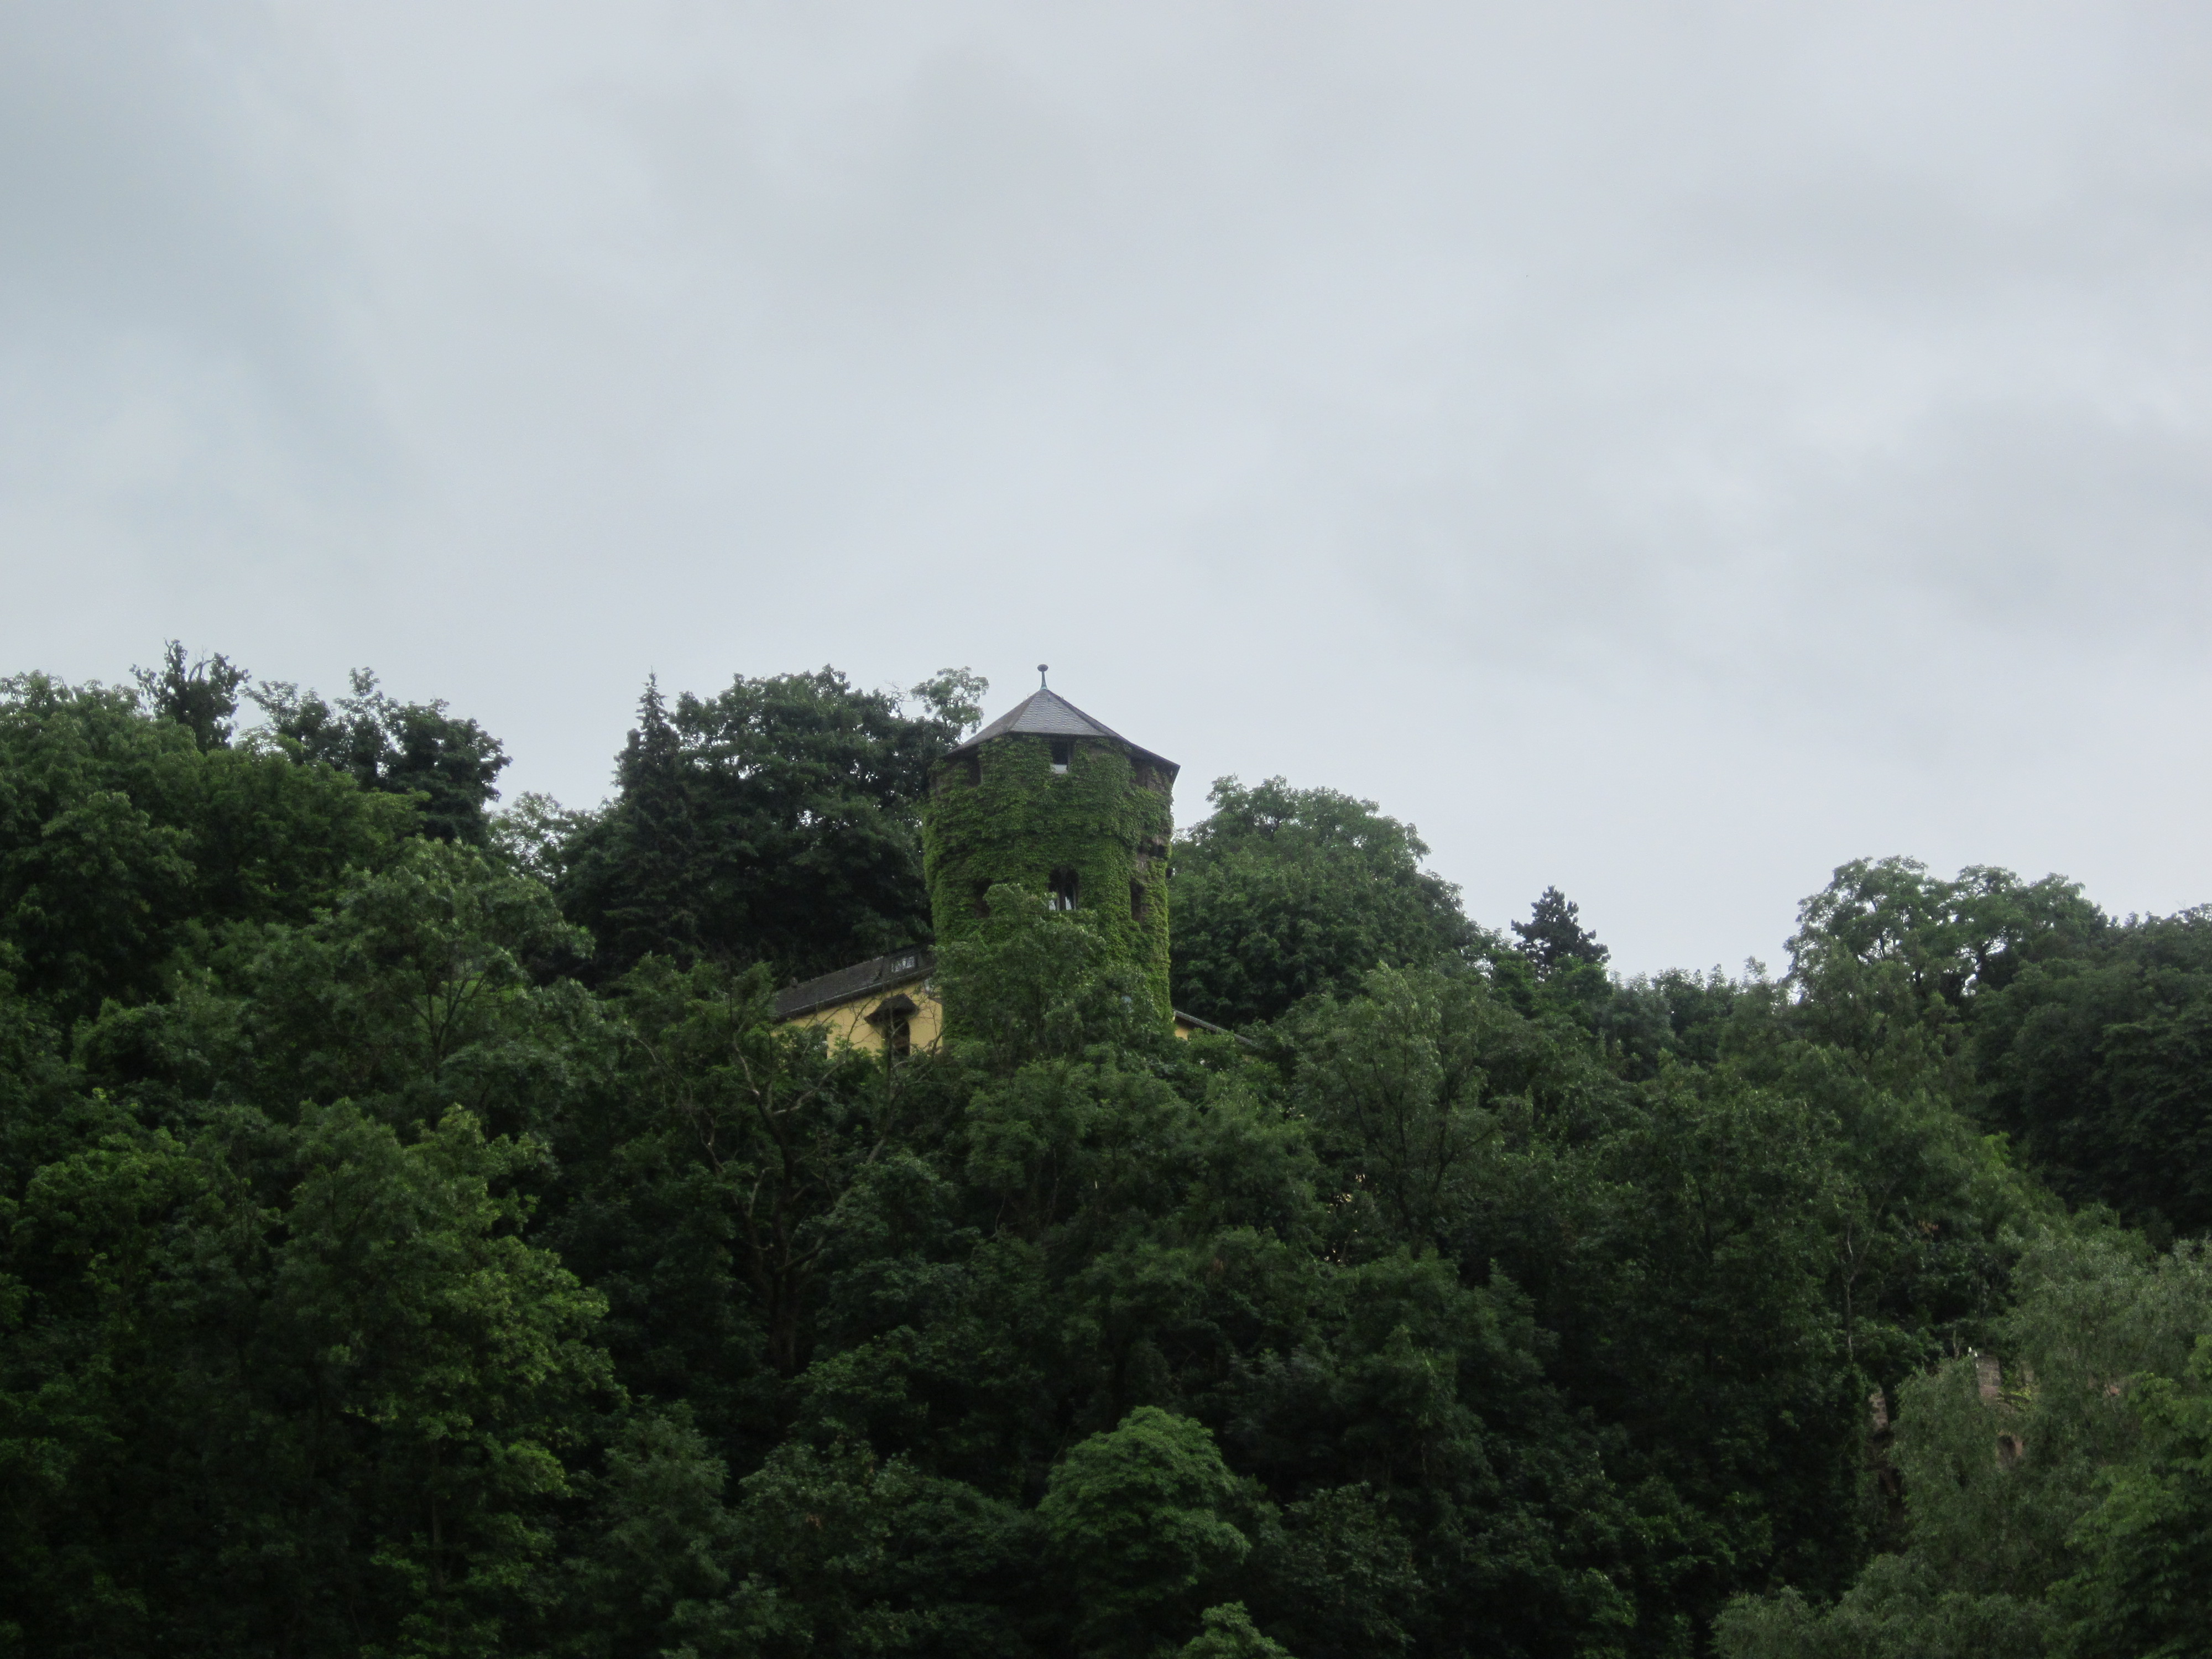 Green castle in koblenz, germany photo